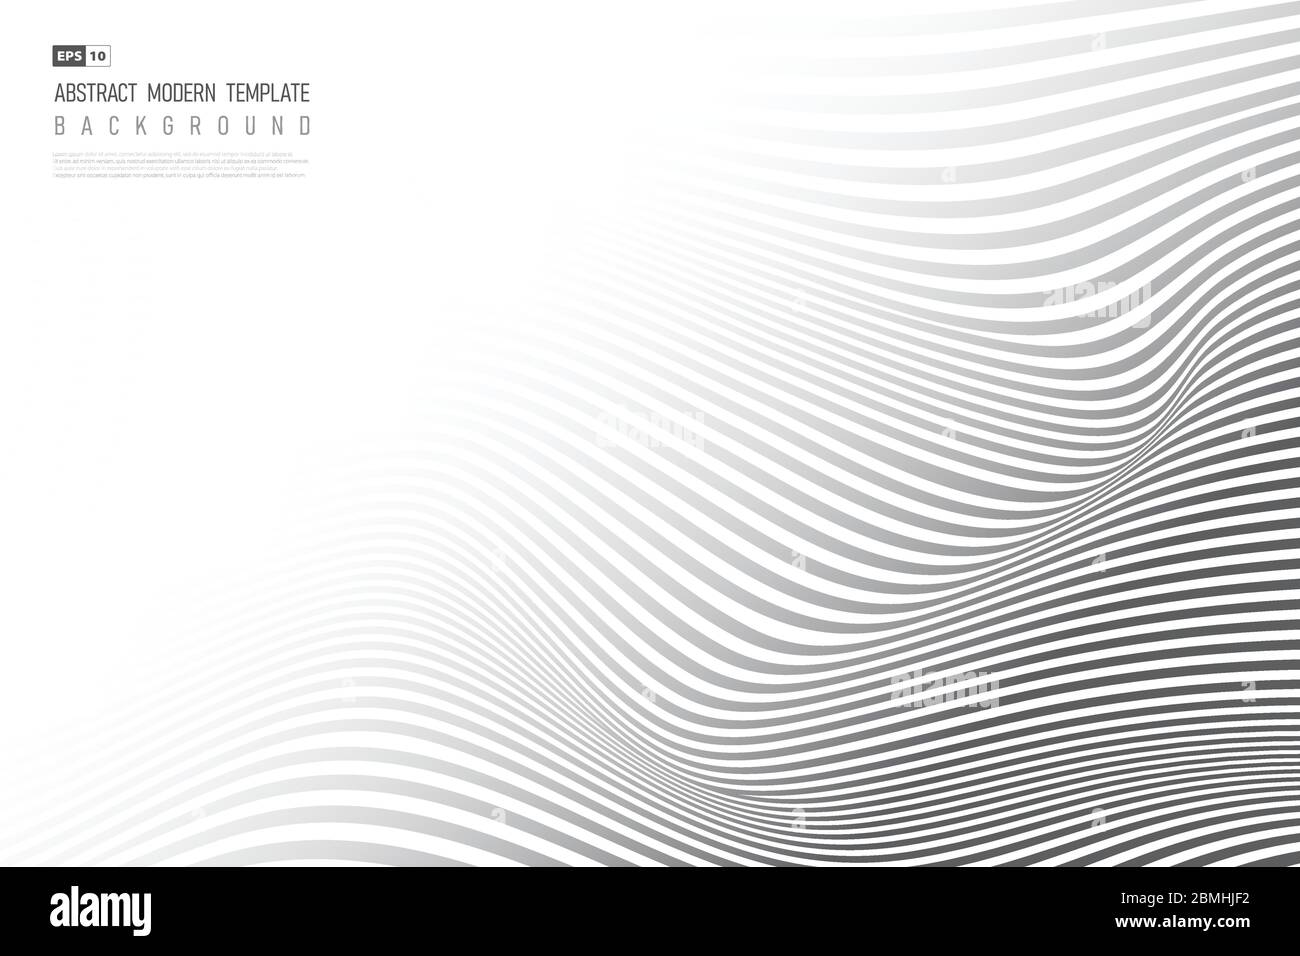 Abstrakt schwarz welliges Design Kunstwerk Muster Hintergrund. Verwenden Sie für Anzeige, Poster, Grafik, Vorlage, Design, Druck. Illustration Vektor eps10 Stock Vektor